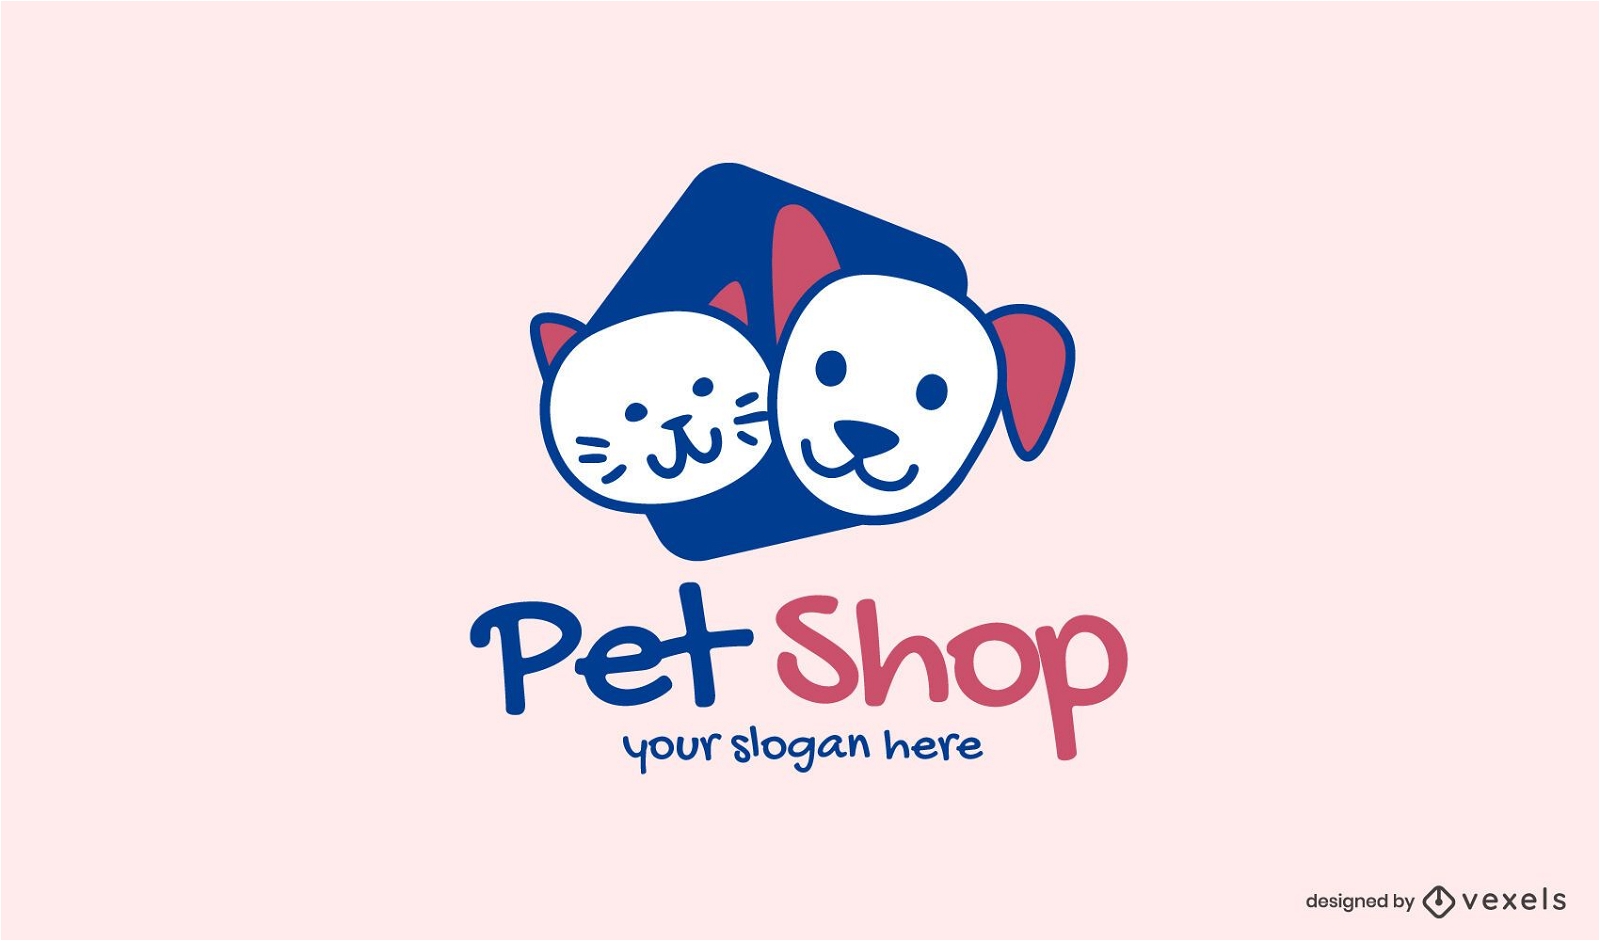 Plantilla de logotipo de tienda de mascotas